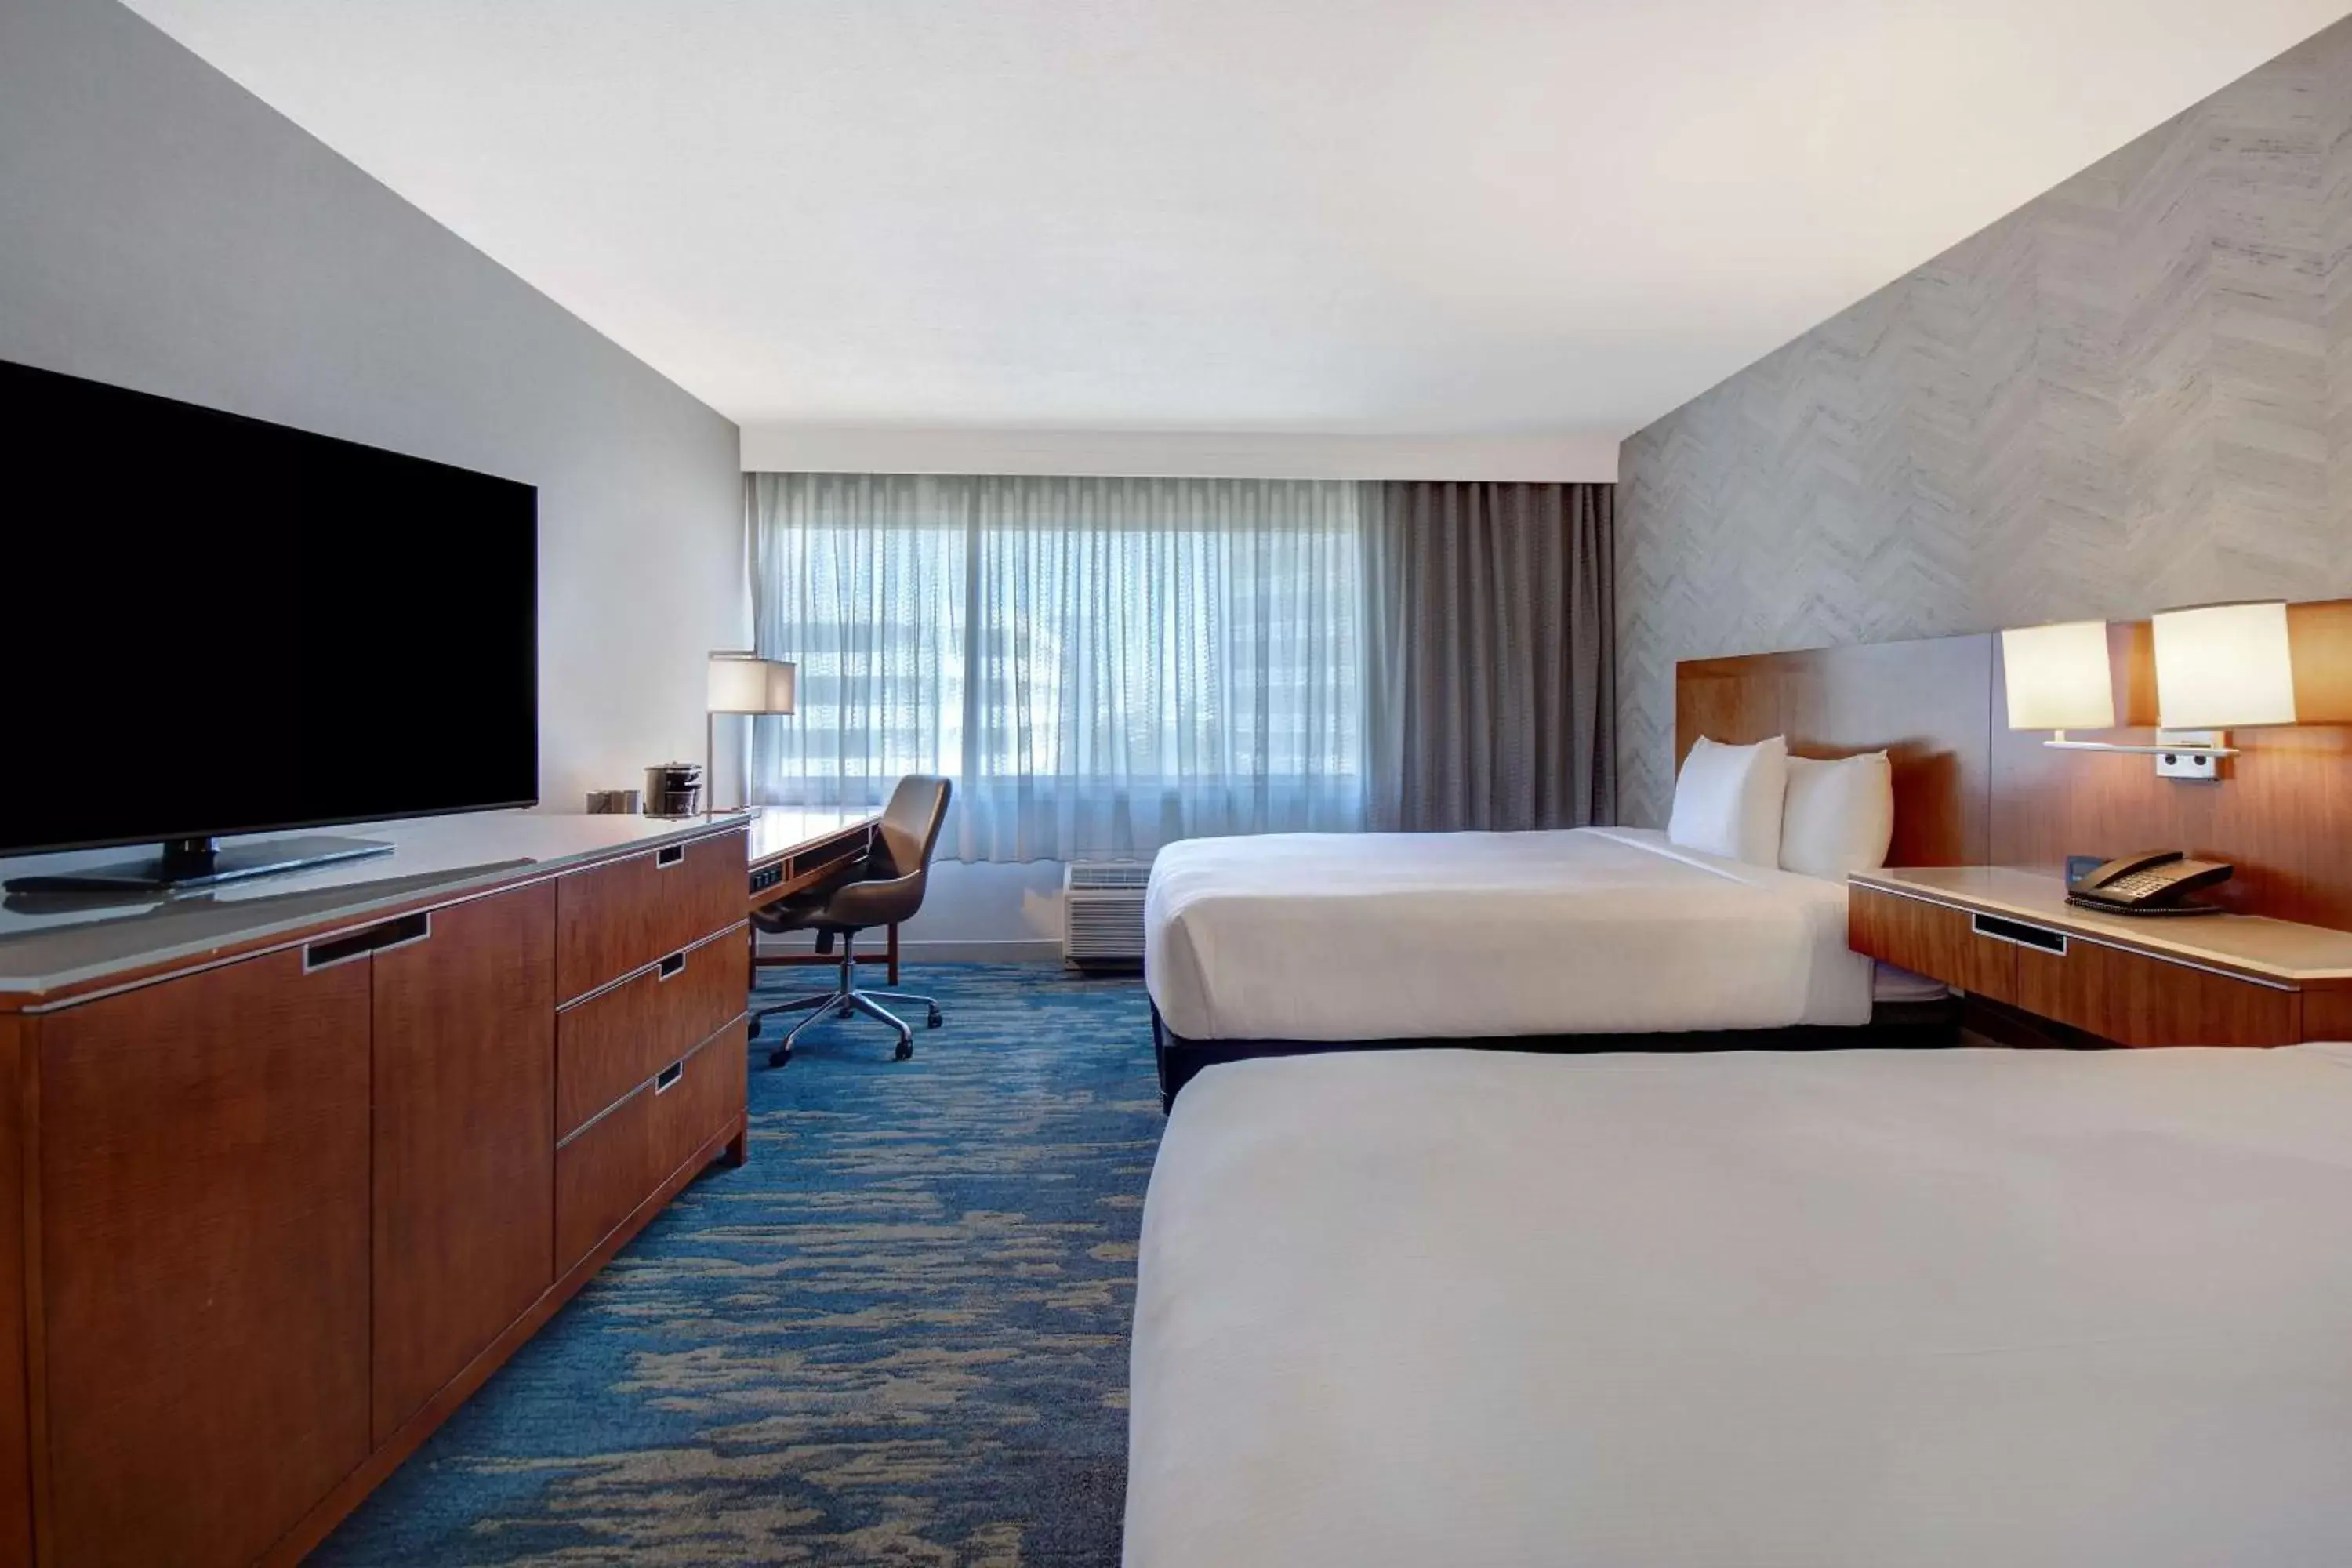 Bedroom, TV/Entertainment Center in DoubleTree by Hilton LAX - El Segundo